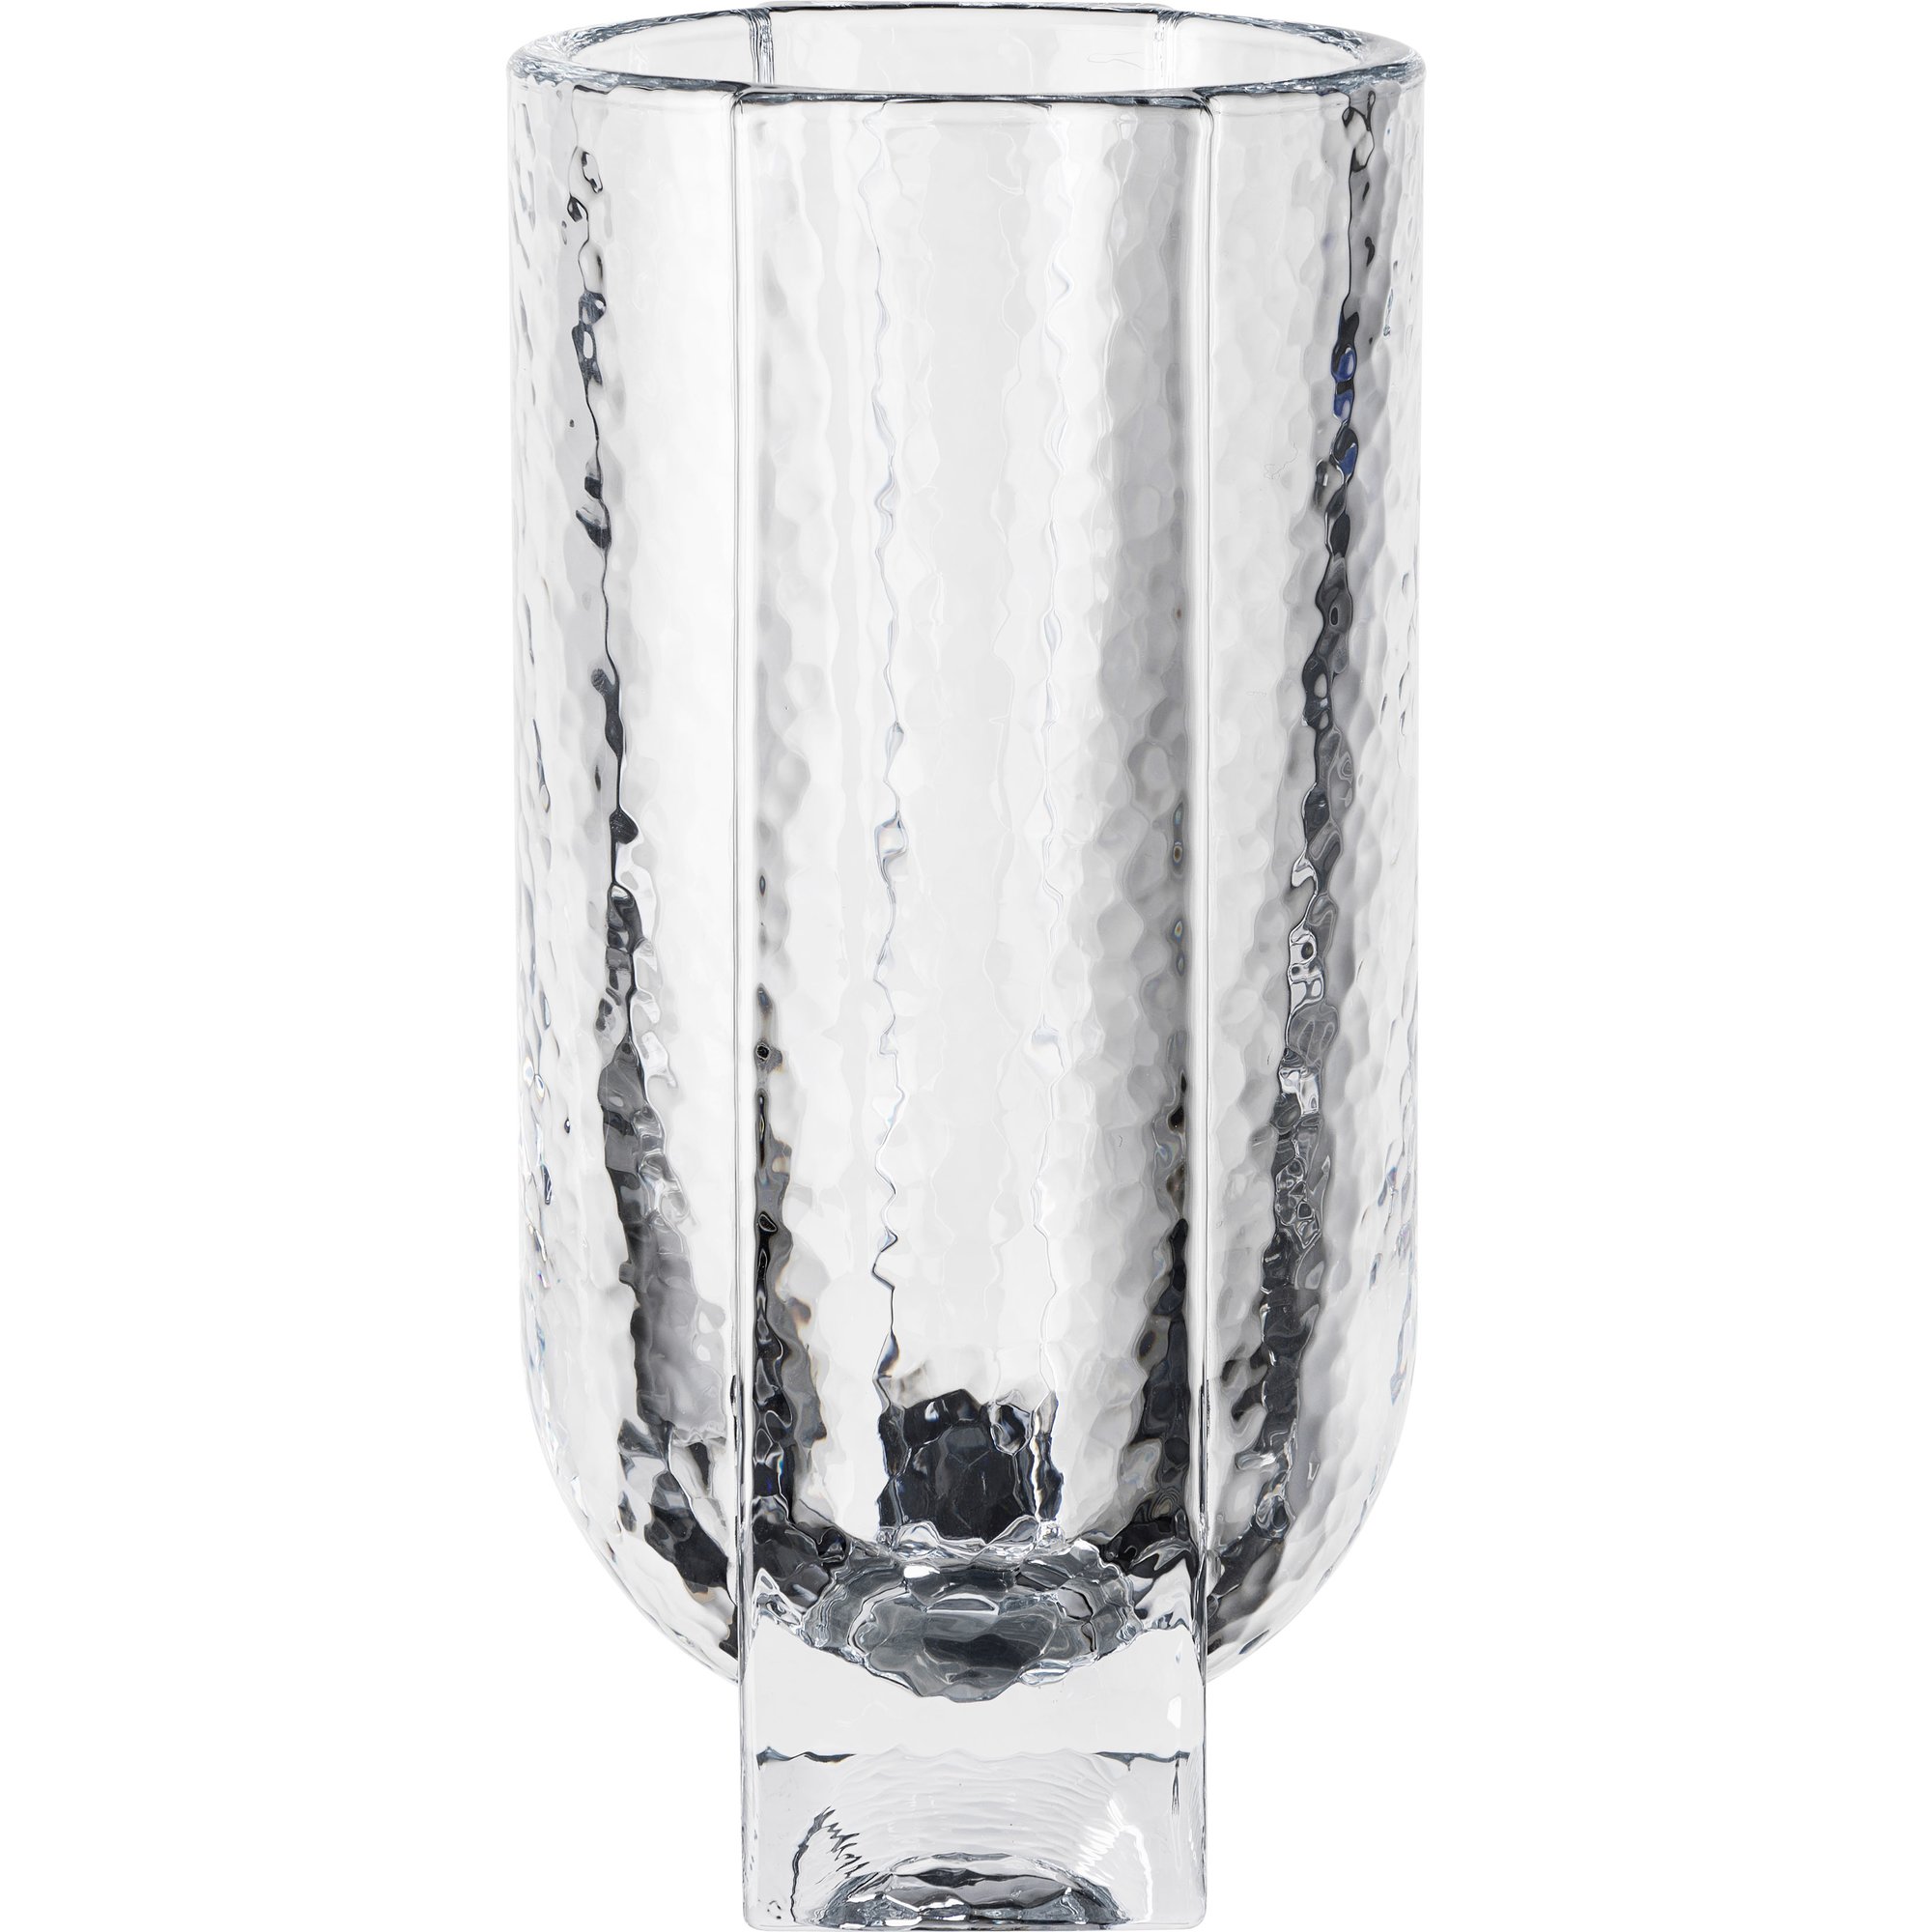 10: Holmegaard Forma vase 20 cm.